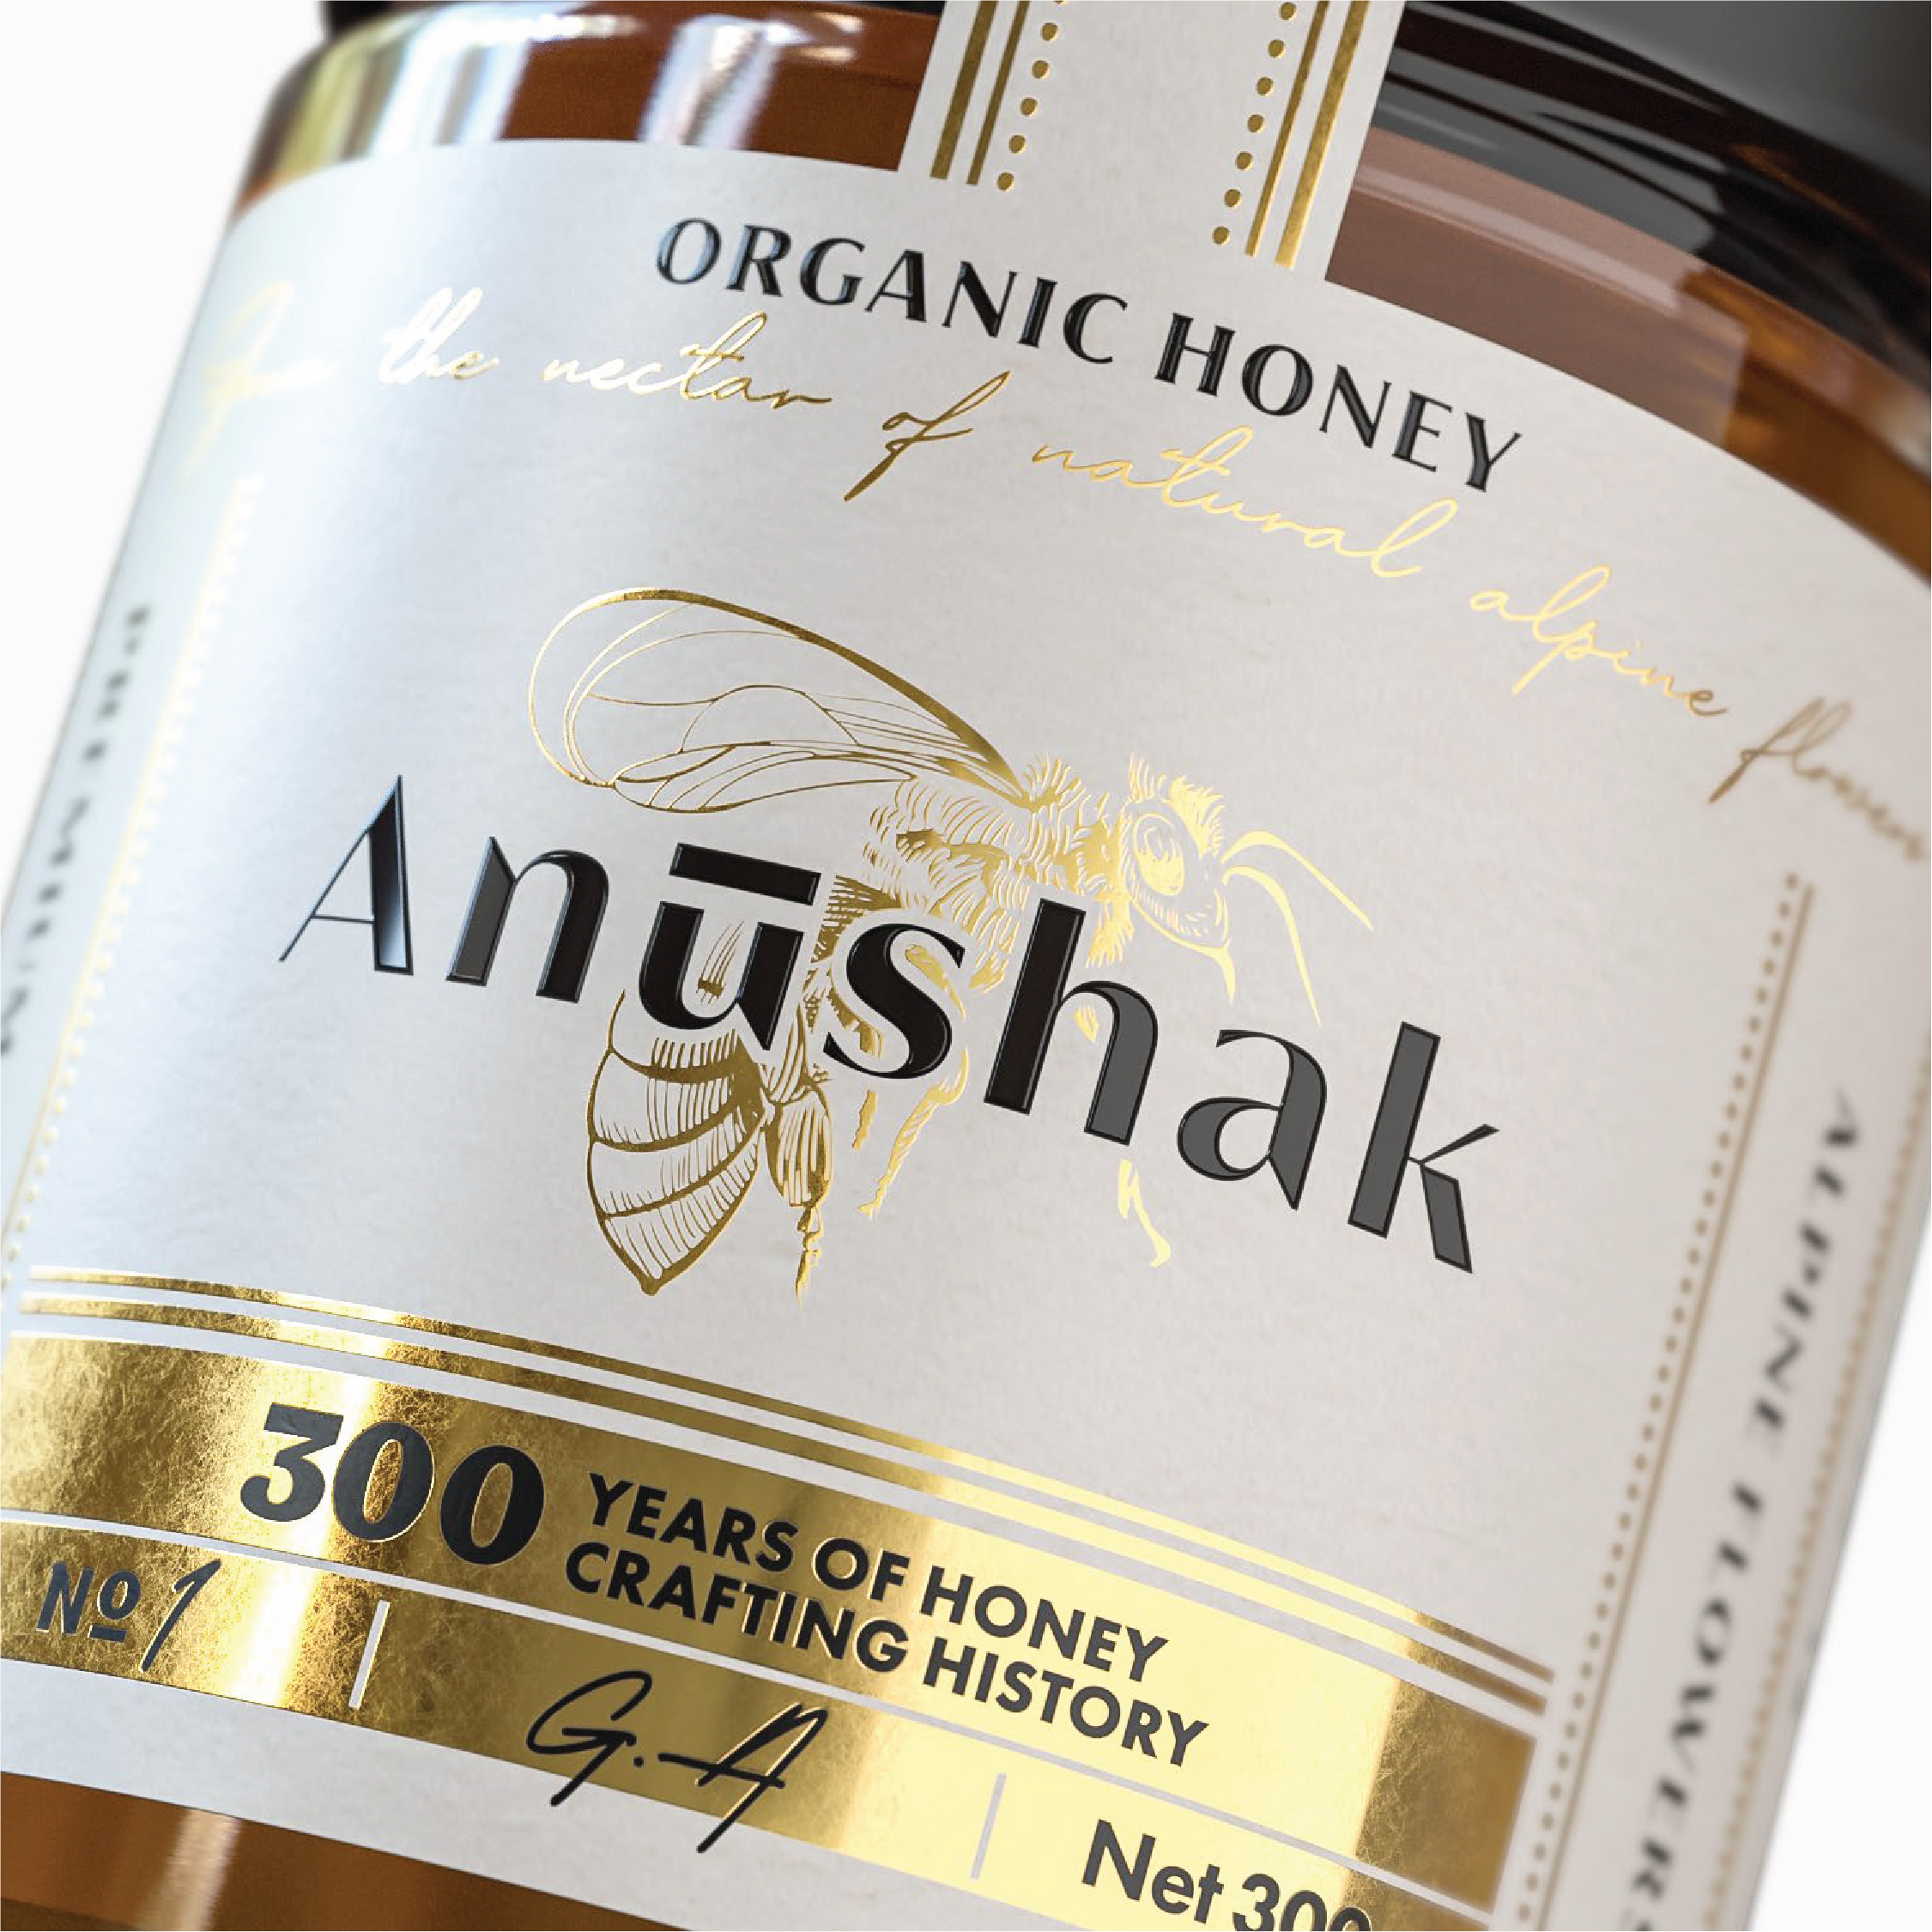 Anushak Packaging Design